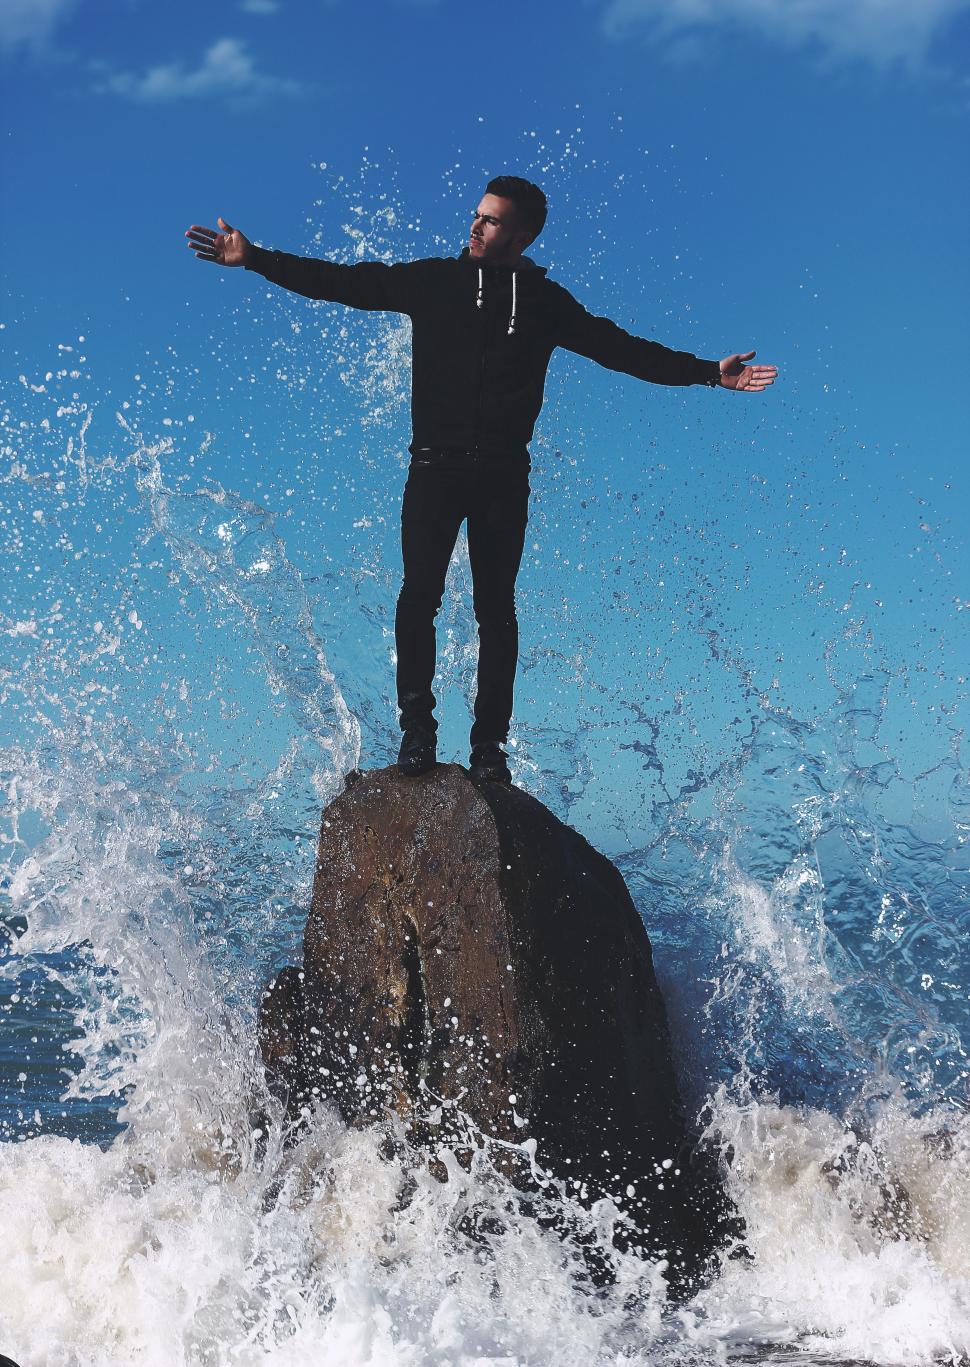 Free Image of Man on rock with splashing water 